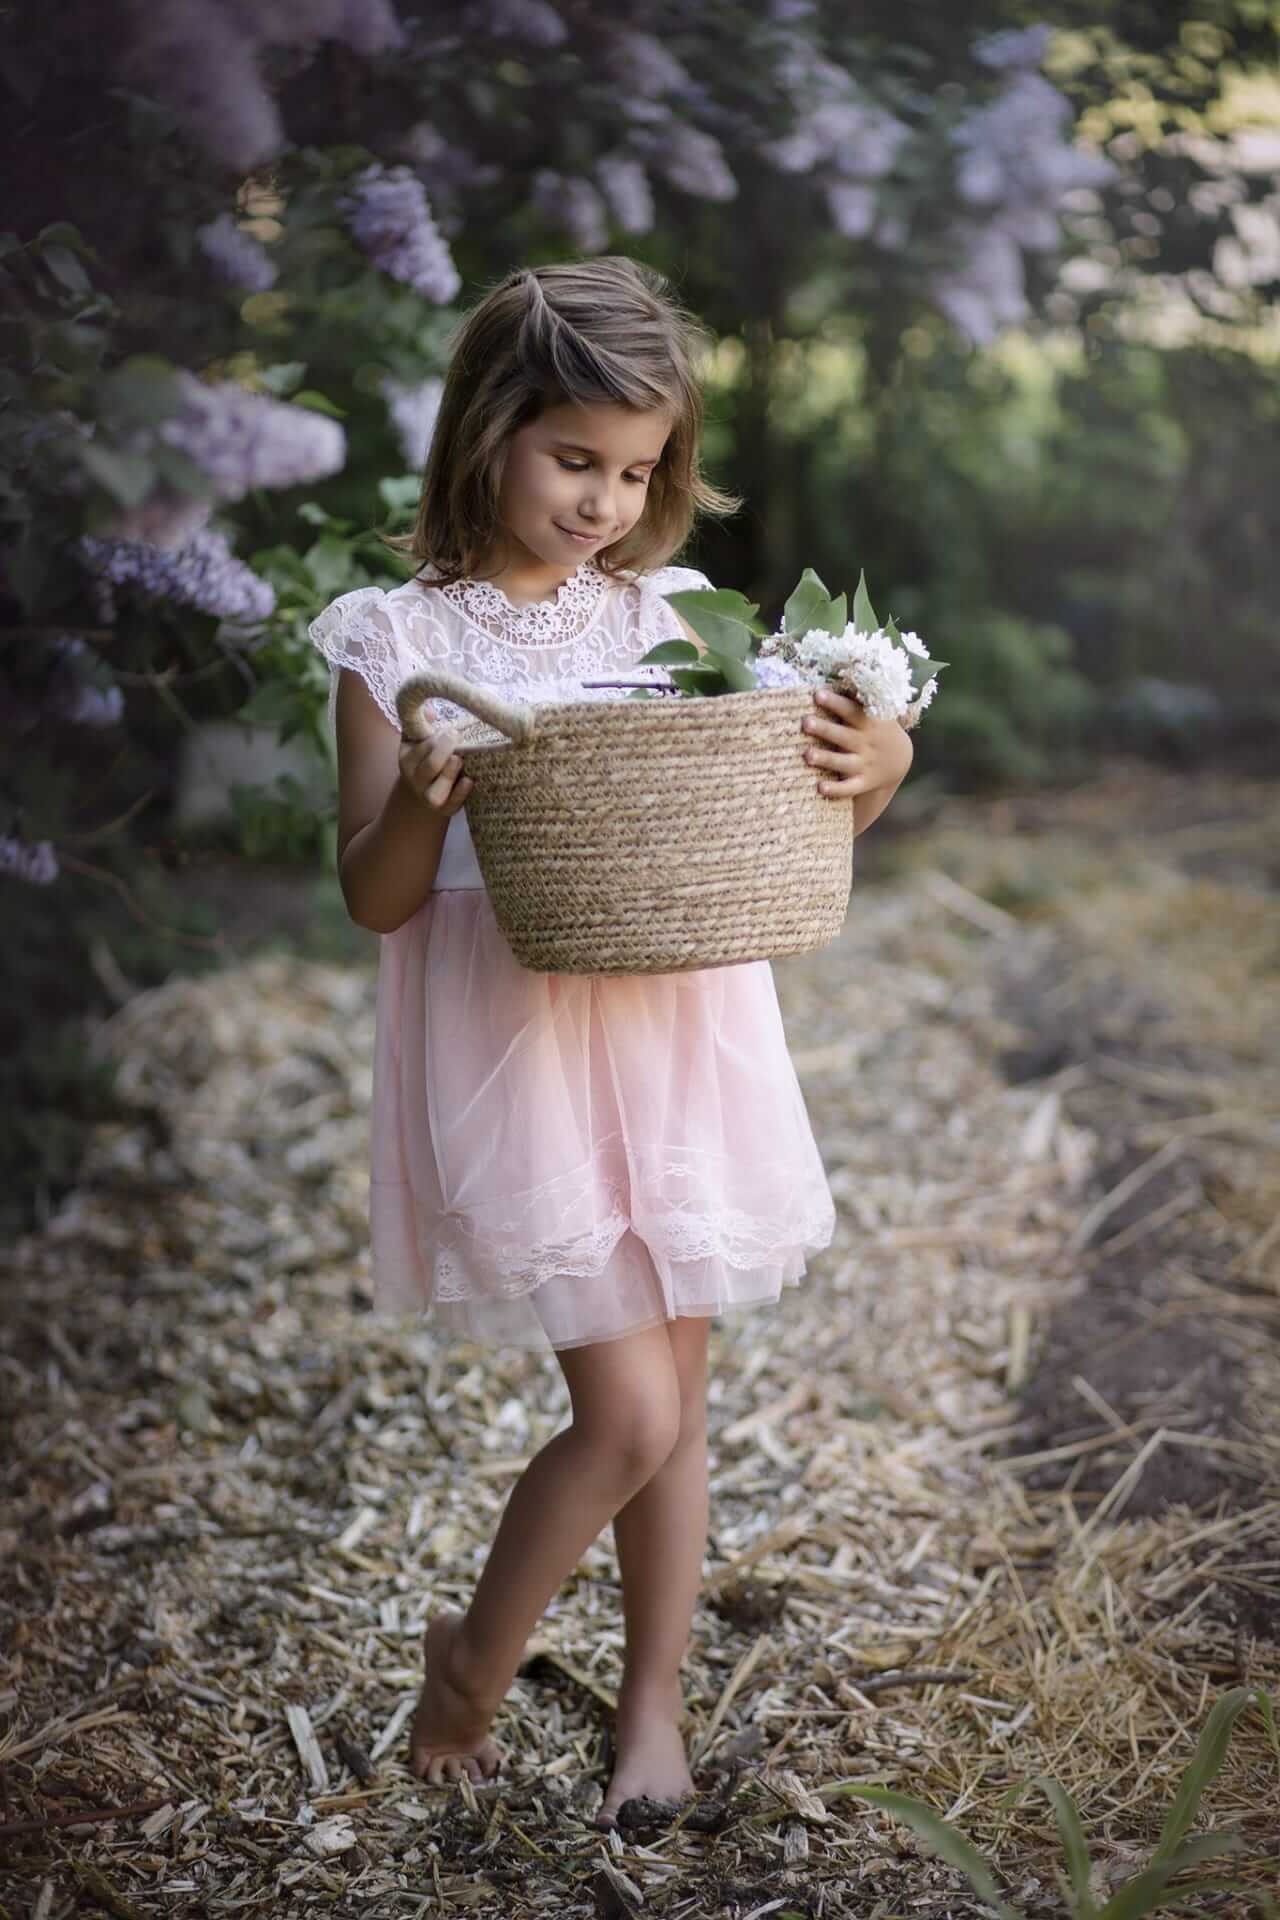 Une petite fille ramasse des fleurs de lilas, capturée par une photographe à Granby.